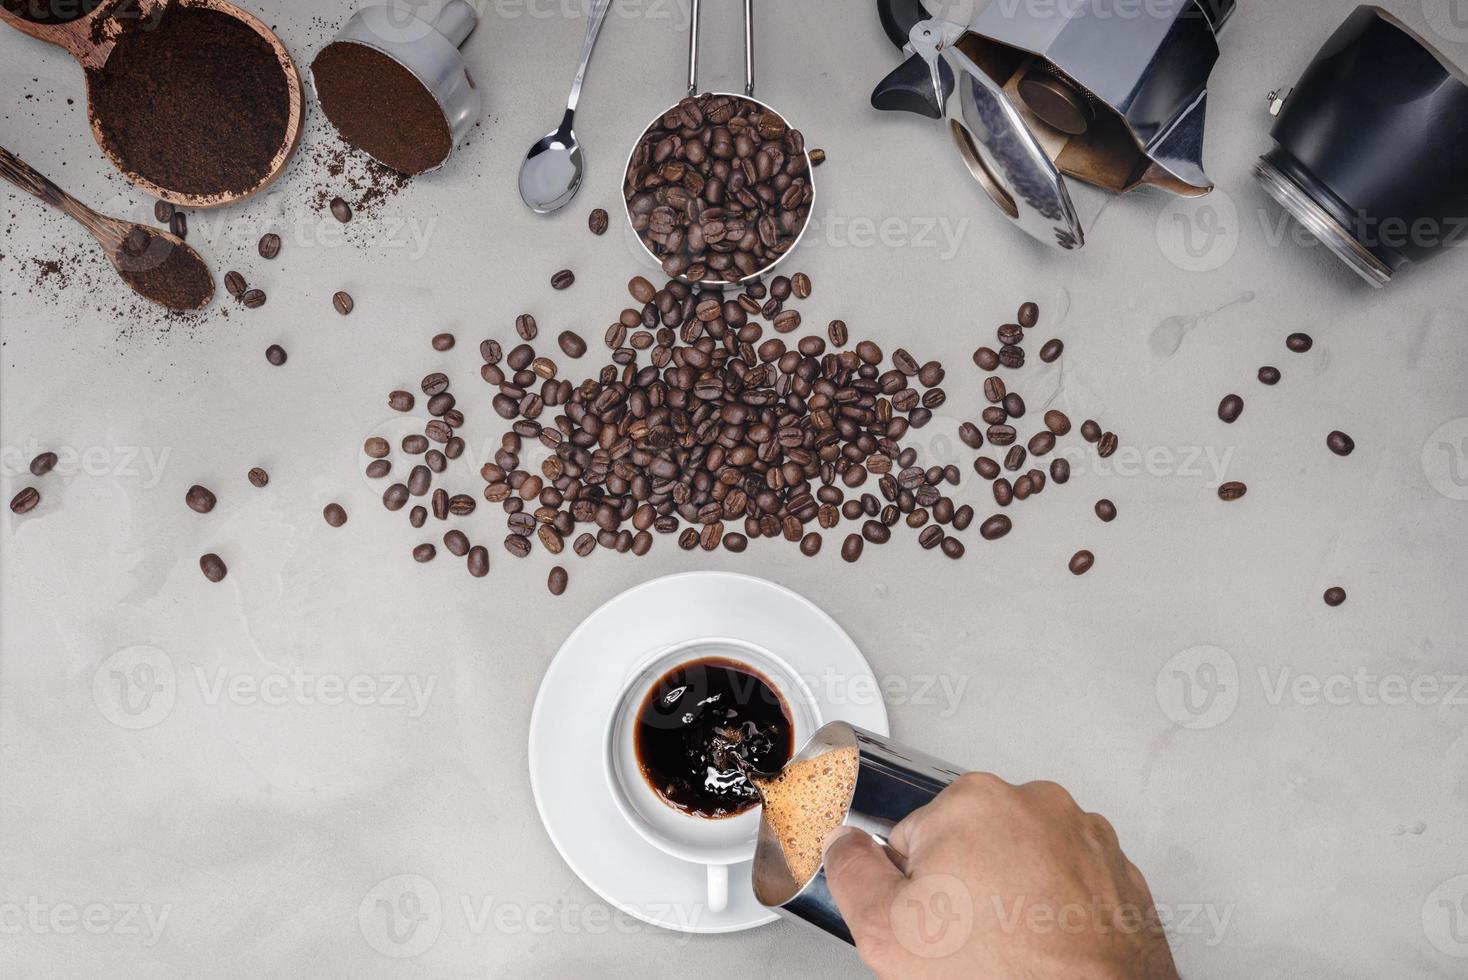 bakgrund med diverse kaffe, kaffebönor, kopp svart kaffe, kaffebryggare utrustning foto